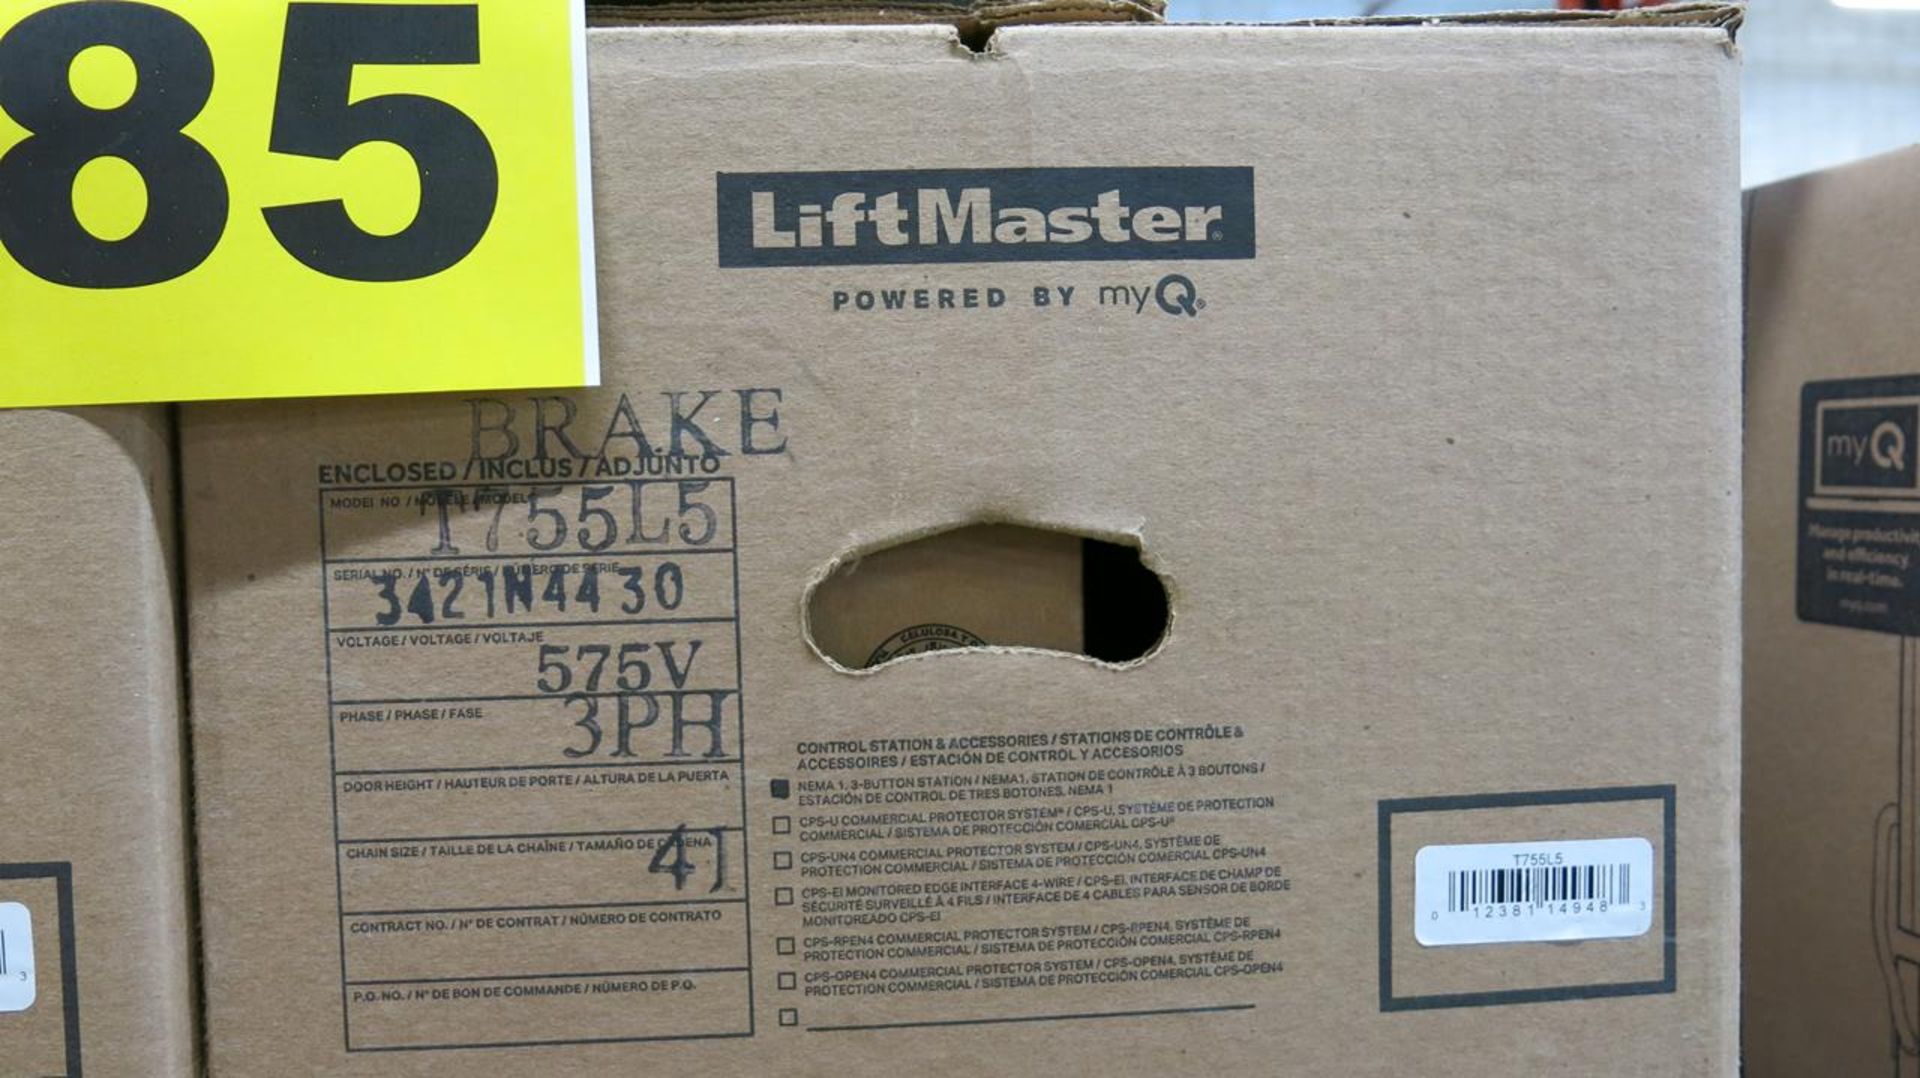 LIFT MASTER, T755L5, GARAGE DOOR OPENER - NEW IN BOX - Image 5 of 5